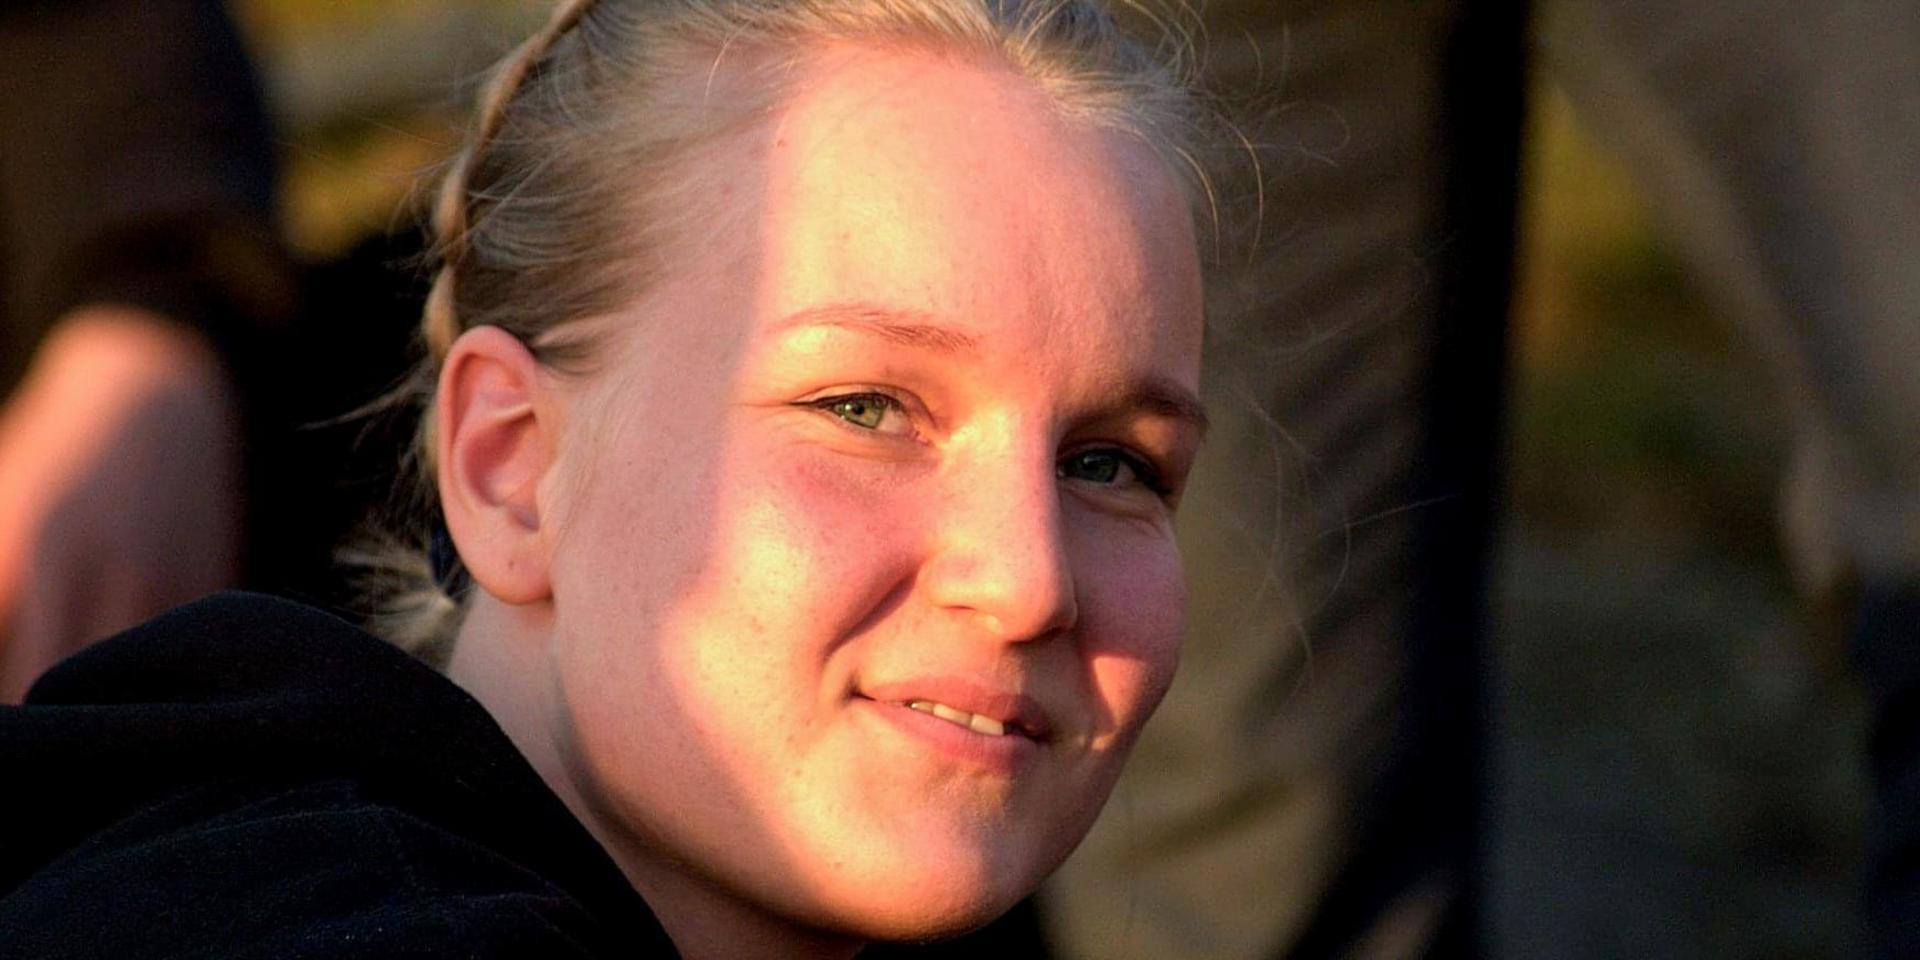 Ingrid Fehn Dellgrens inlägg delades 22 gånger och många som sett det taggade kompisar som kör spårvagn för att hjälpa henne hitta föraren. 